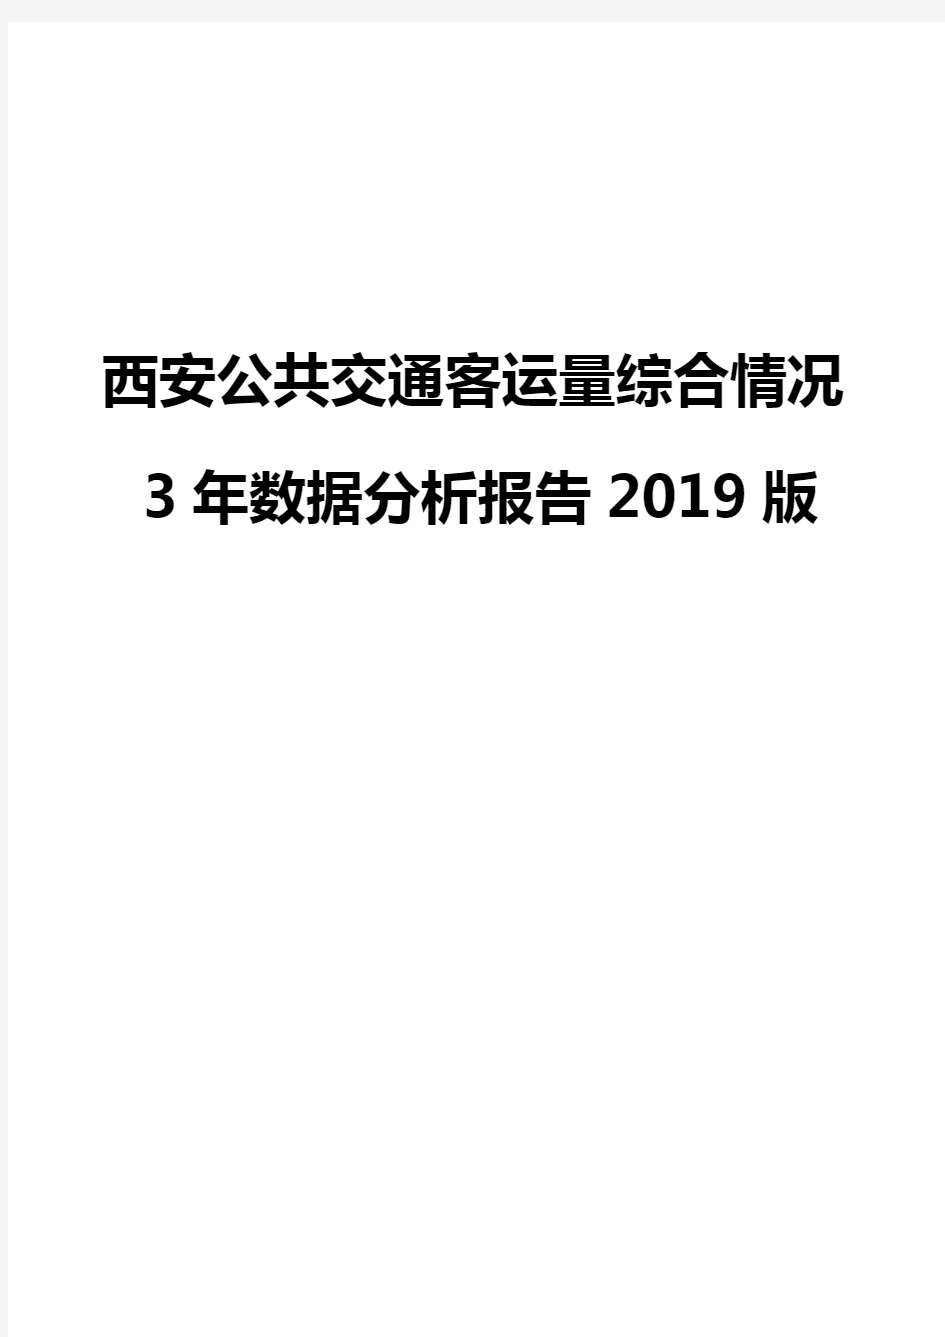 西安公共交通客运量综合情况3年数据分析报告2019版